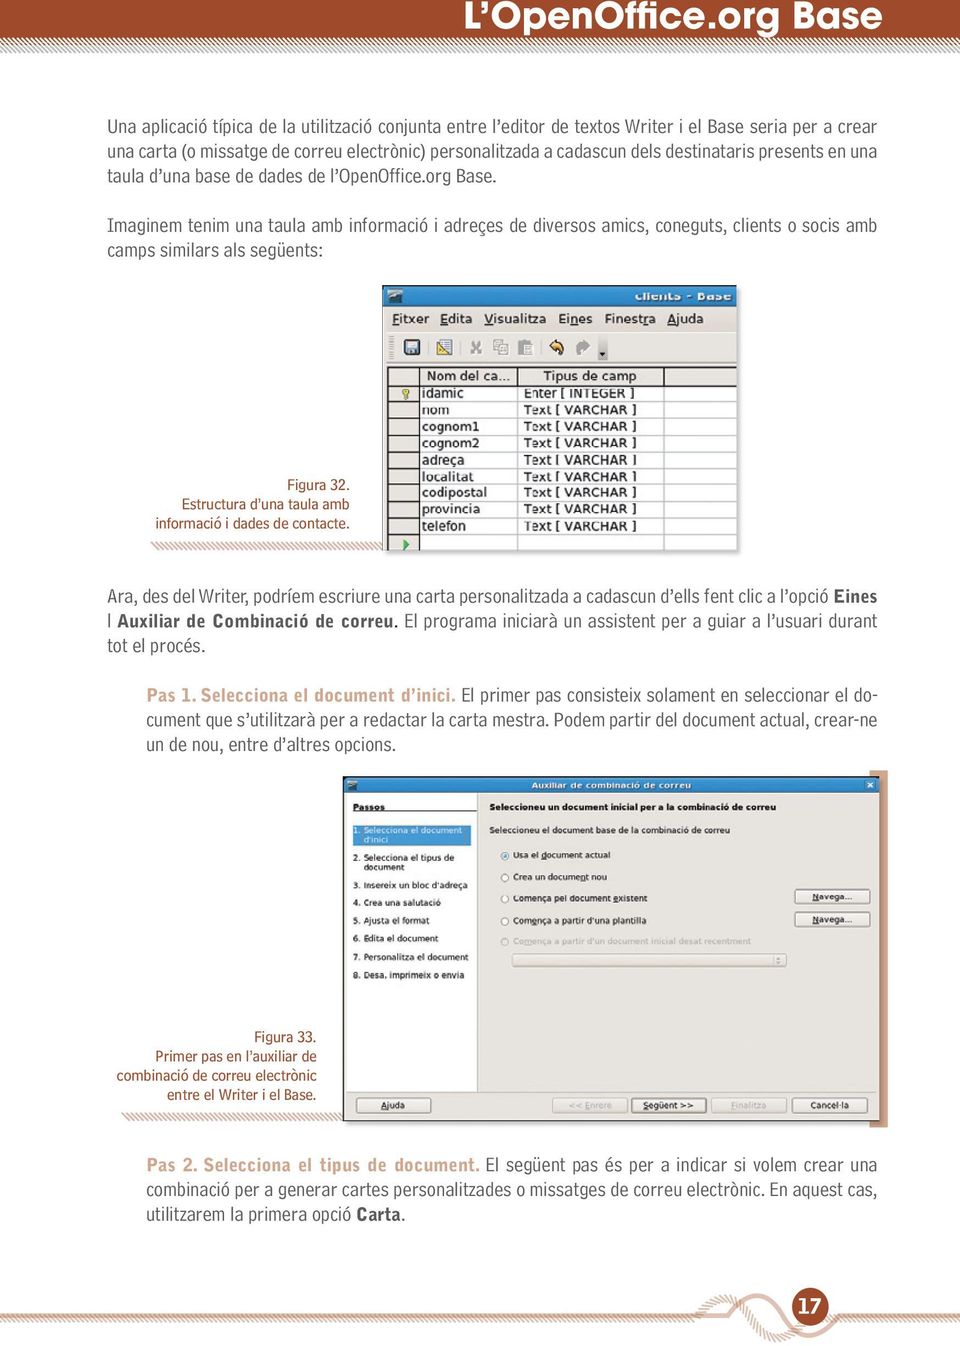 destinataris presents en una taula d una base de dades de l OpenOffice.org Base.